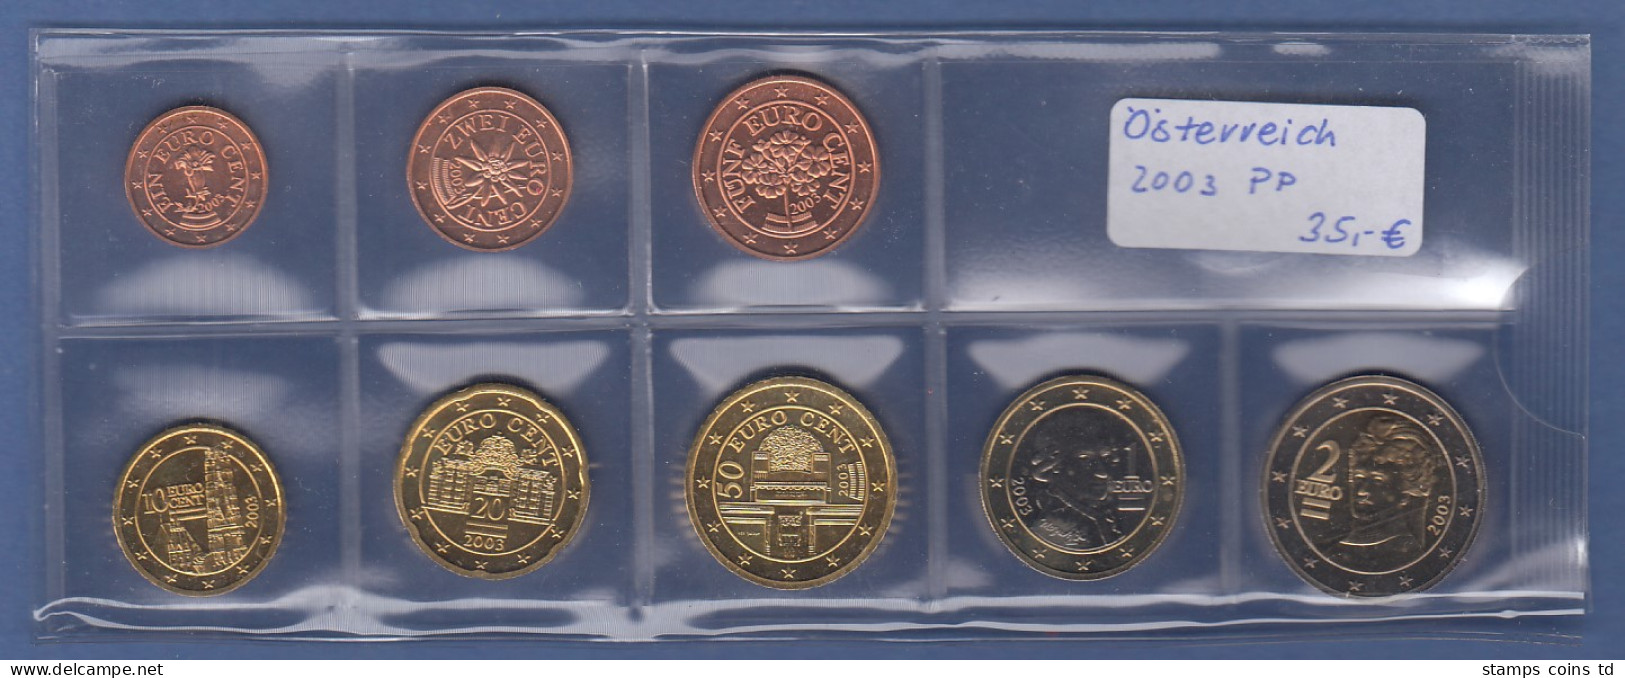 Österreich EURO-Kursmünzensatz Jahrgang 2003 Bankfrisch / Unzirkuliert - Austria